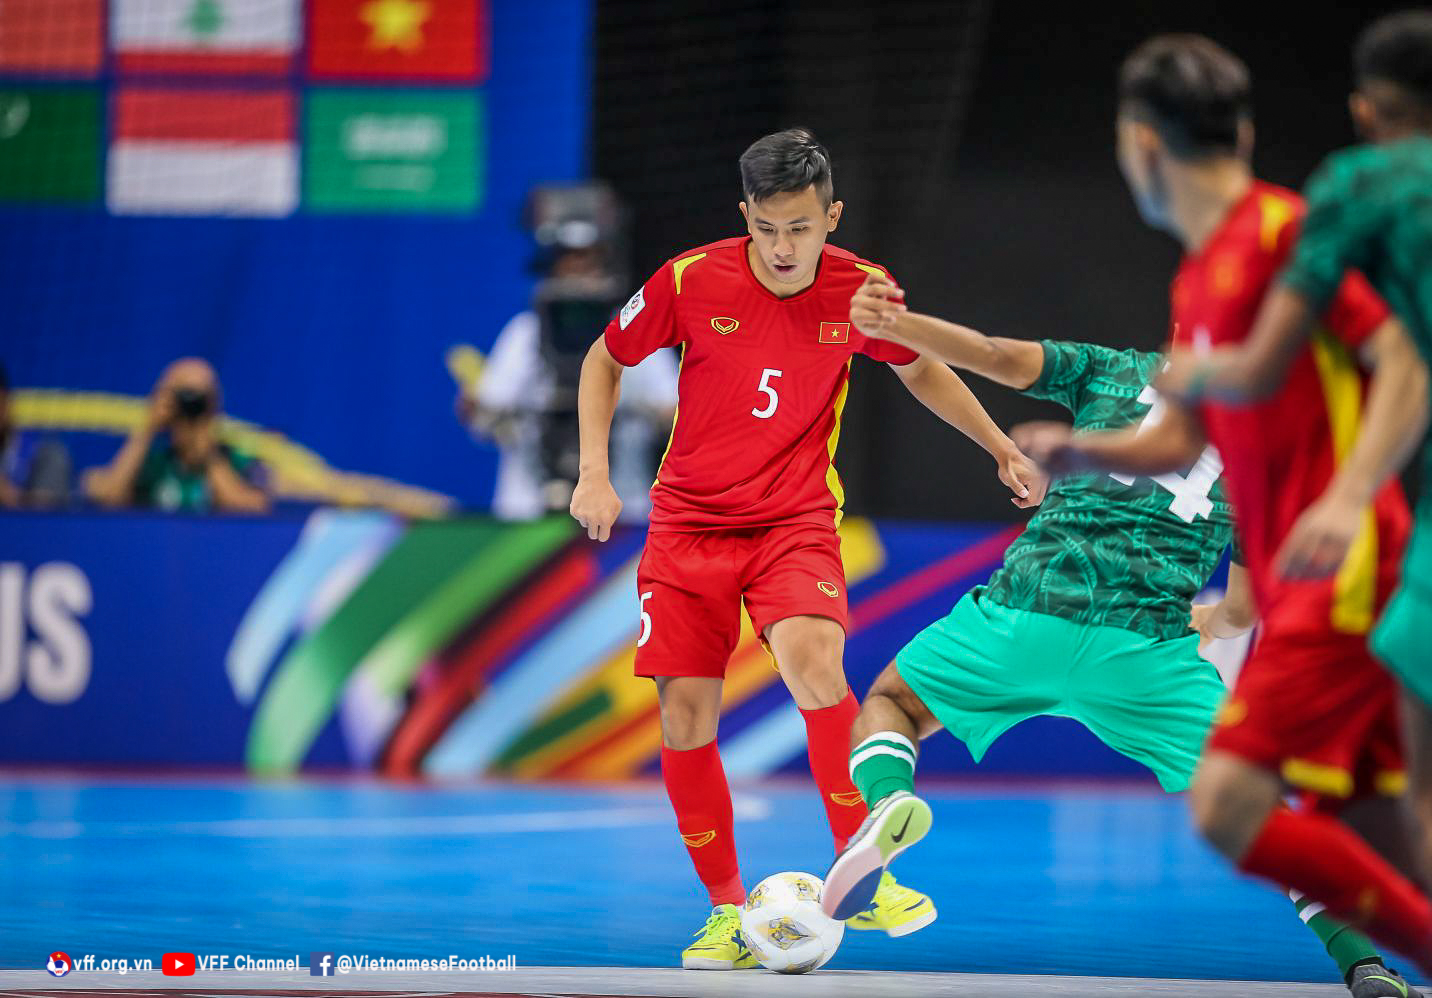 Thắng Ả-rập Xê-út 3-1, ĐT futsal Việt Nam vươn lên đầu bảng - Ảnh 3.